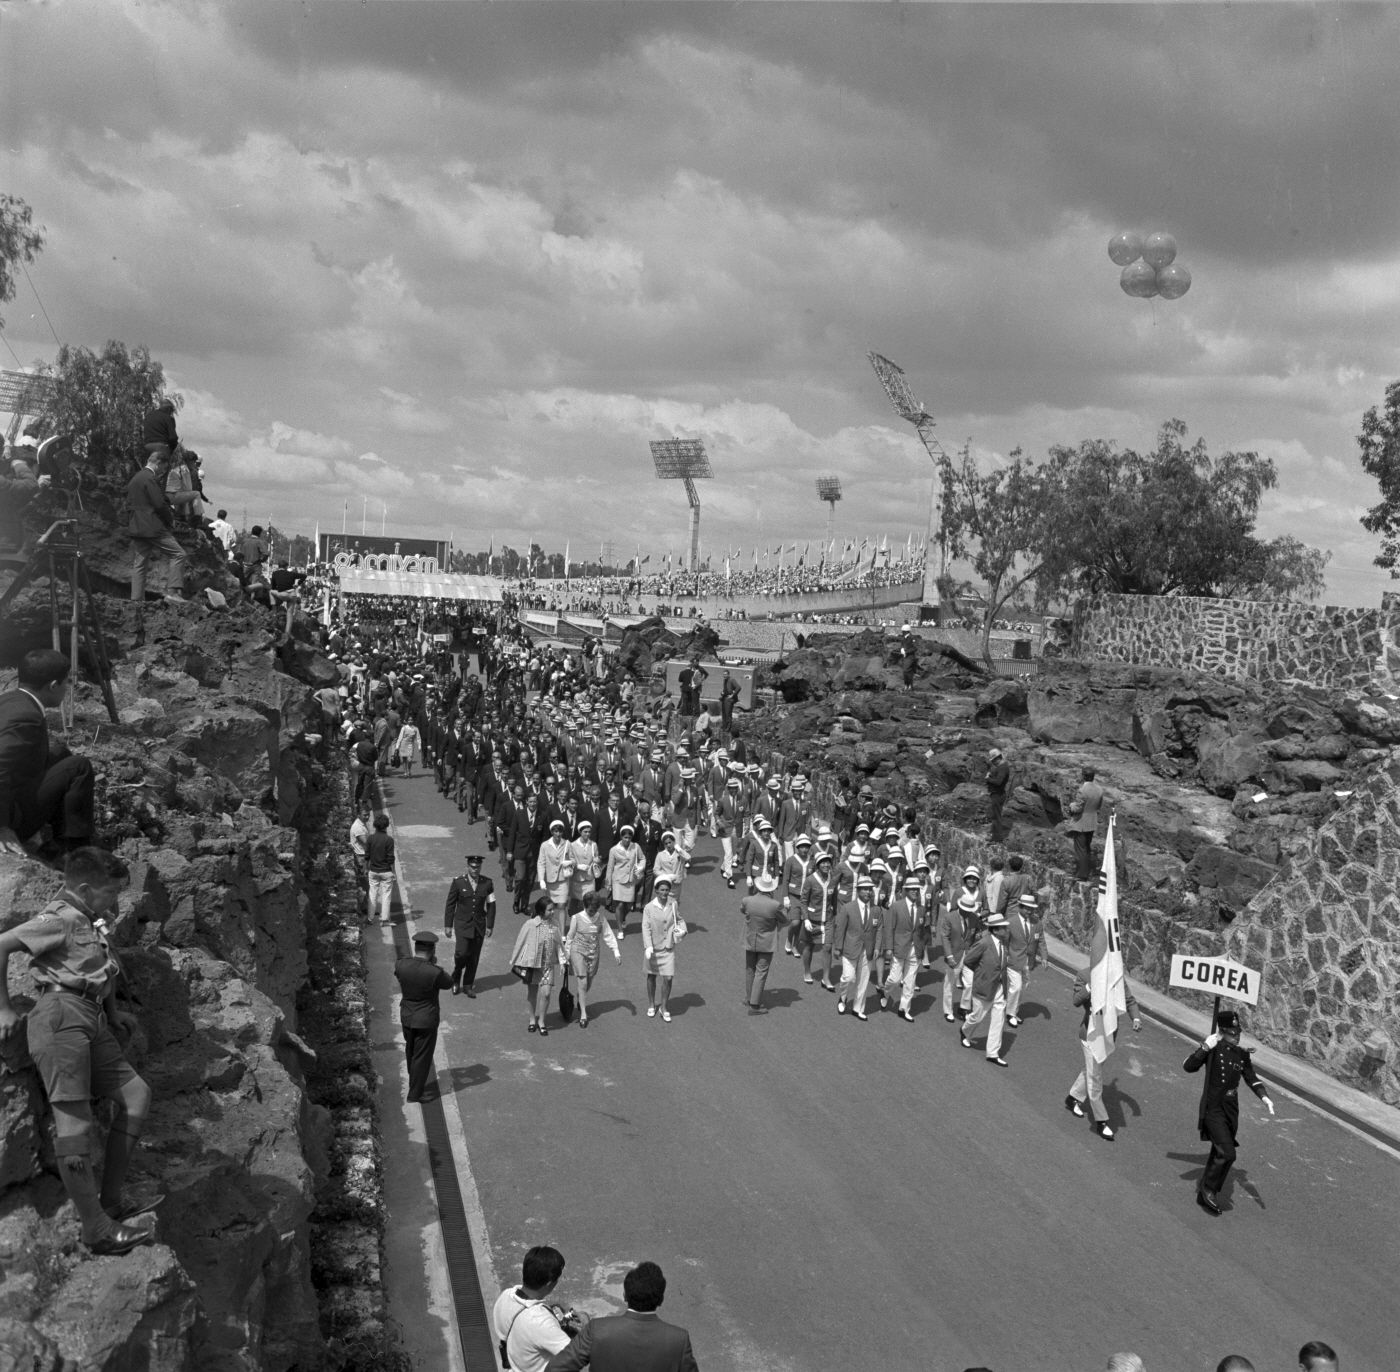 제19회 멕시코 하계올림픽대회 개회식